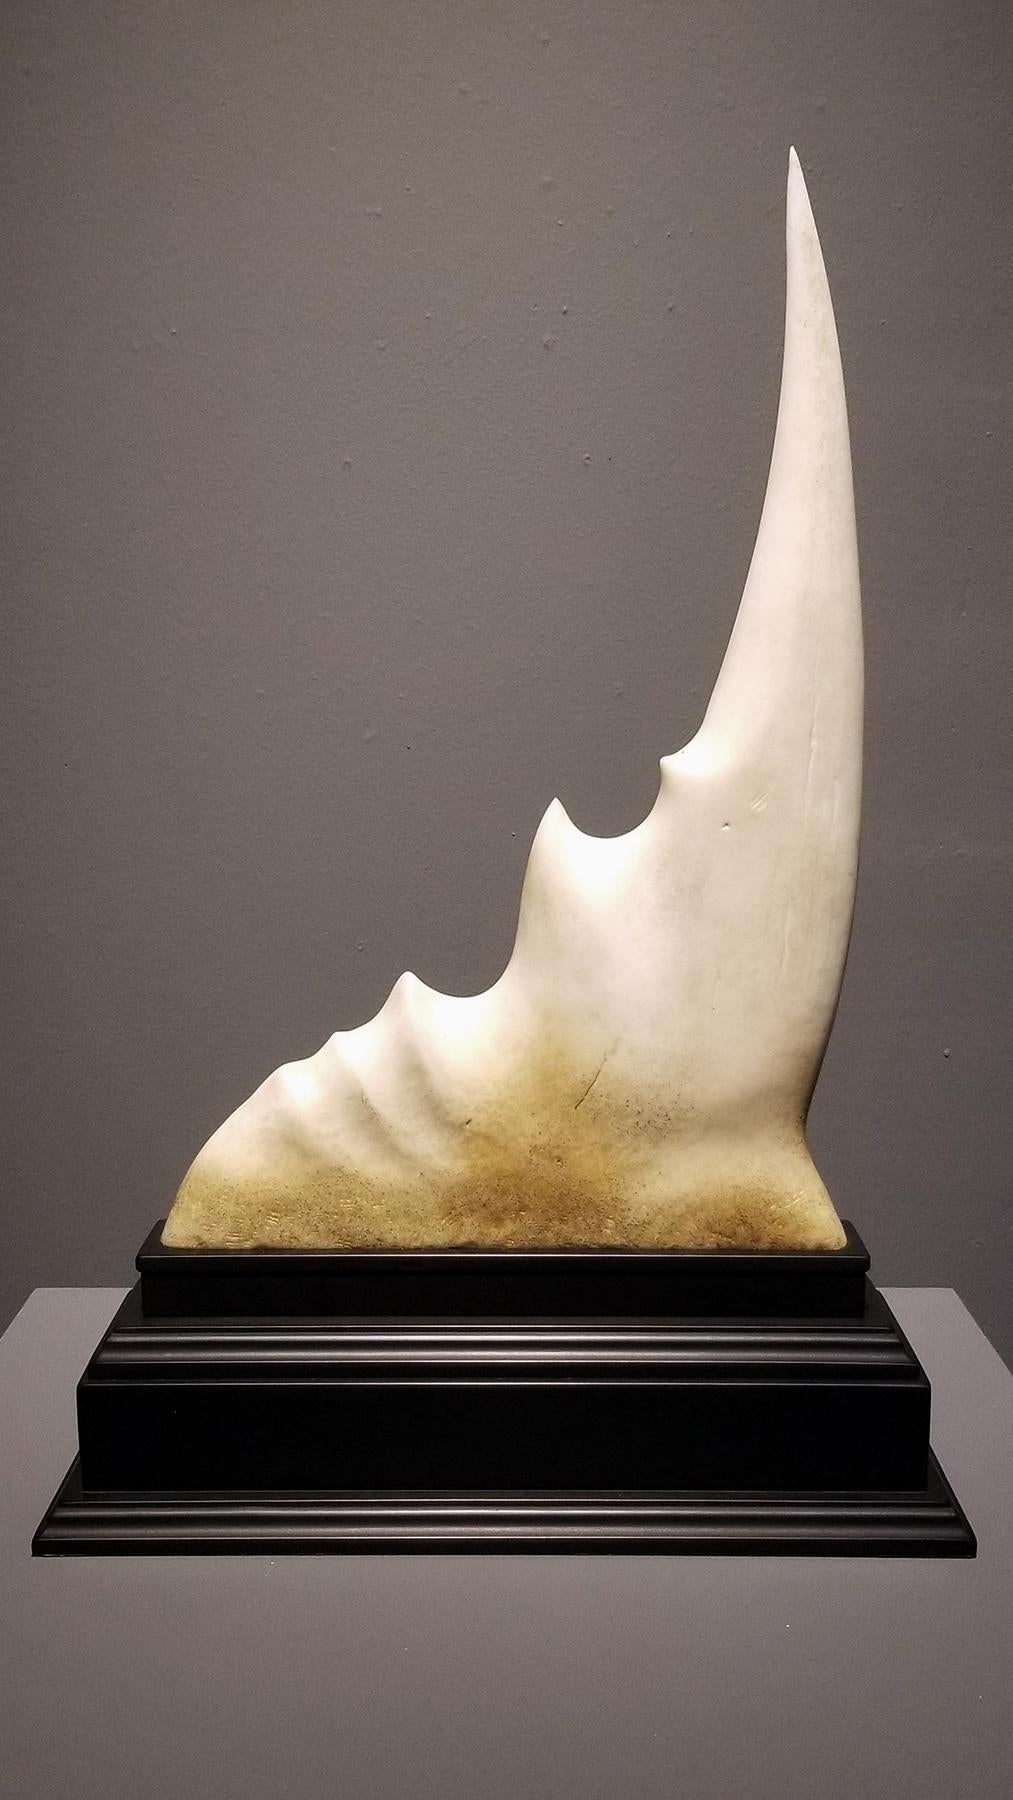 Une sculpture originale de l'artiste Steve Brudniak, basé à Austin, au Texas.

STEVE BRUDNIAK
Défense du solipsisaure (étude de la catastrophe ontologique), 2019
Plastique ABS et phénolique sculpté et traité
21 x 15 x 5 in

Steve Brudniak est un